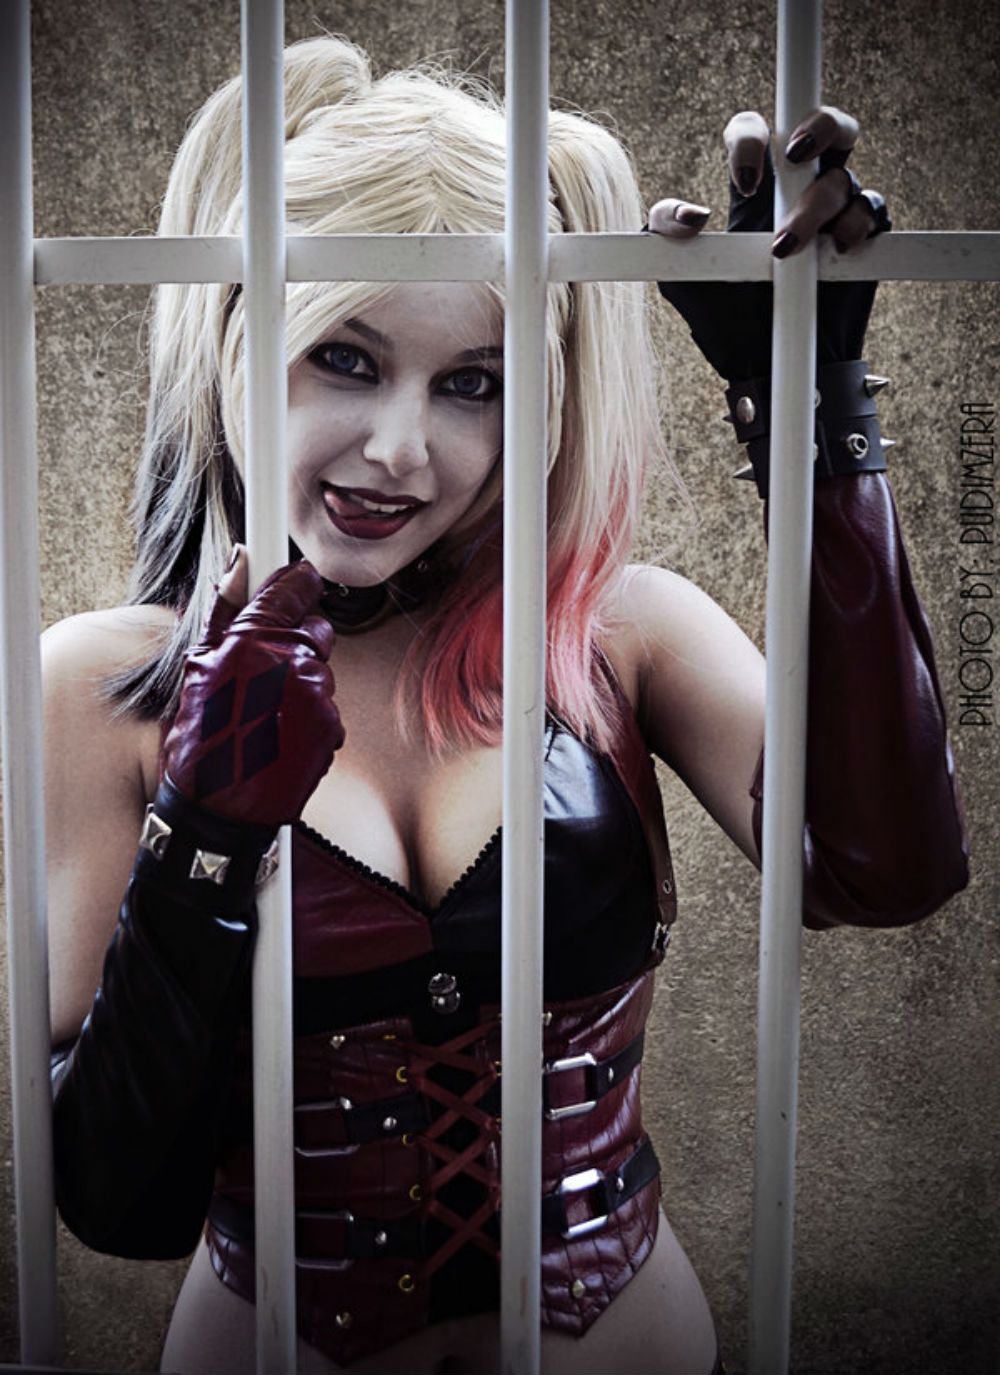 Shermie as Harley Quinn